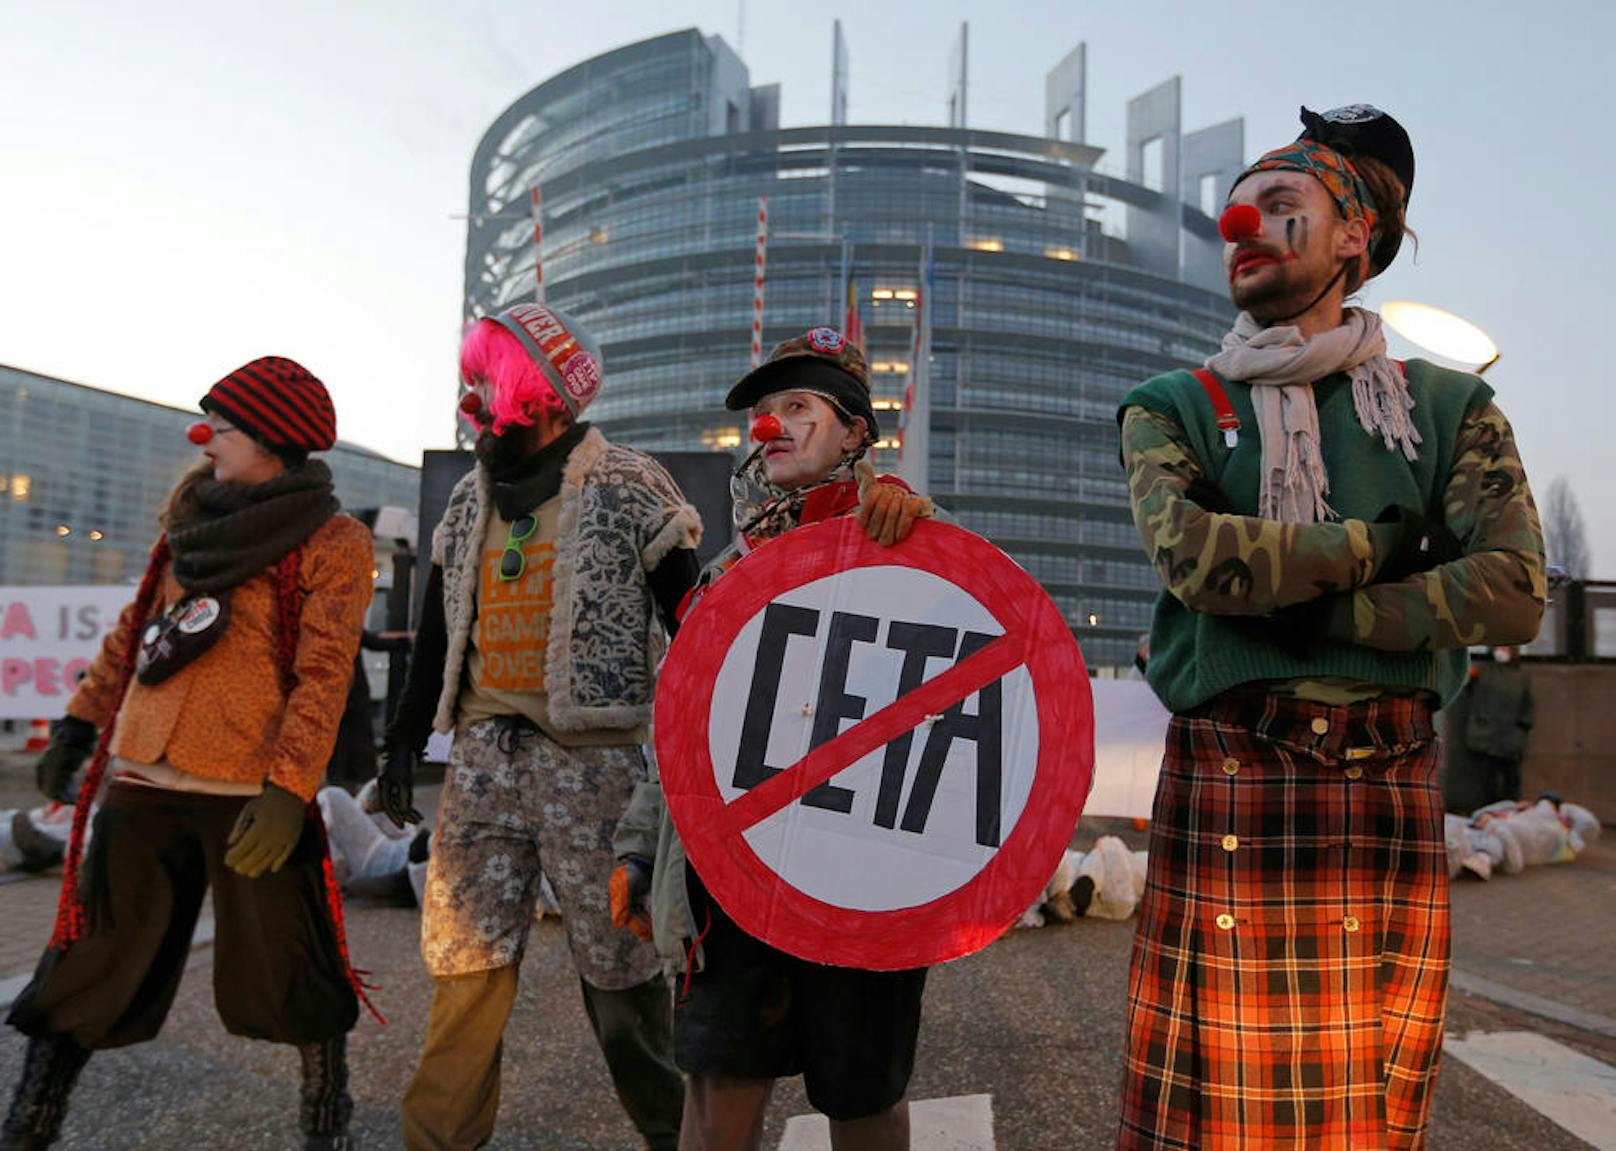 CETA-Protest vor dem EU-Parlament